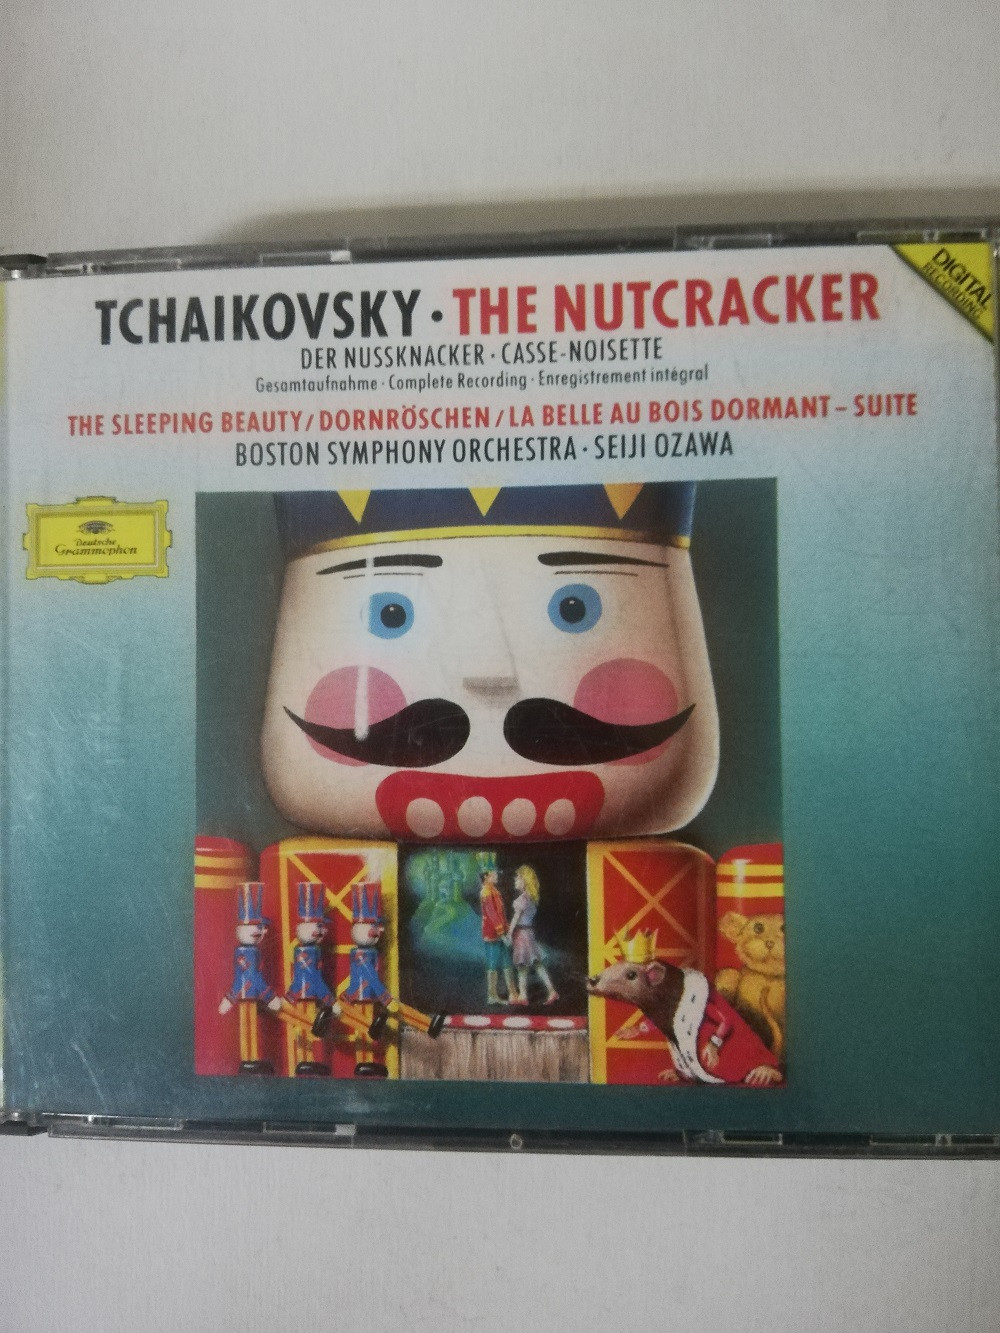 Imagen CD X 2 TCHAIKOVSKY - THE NUTCRACKER